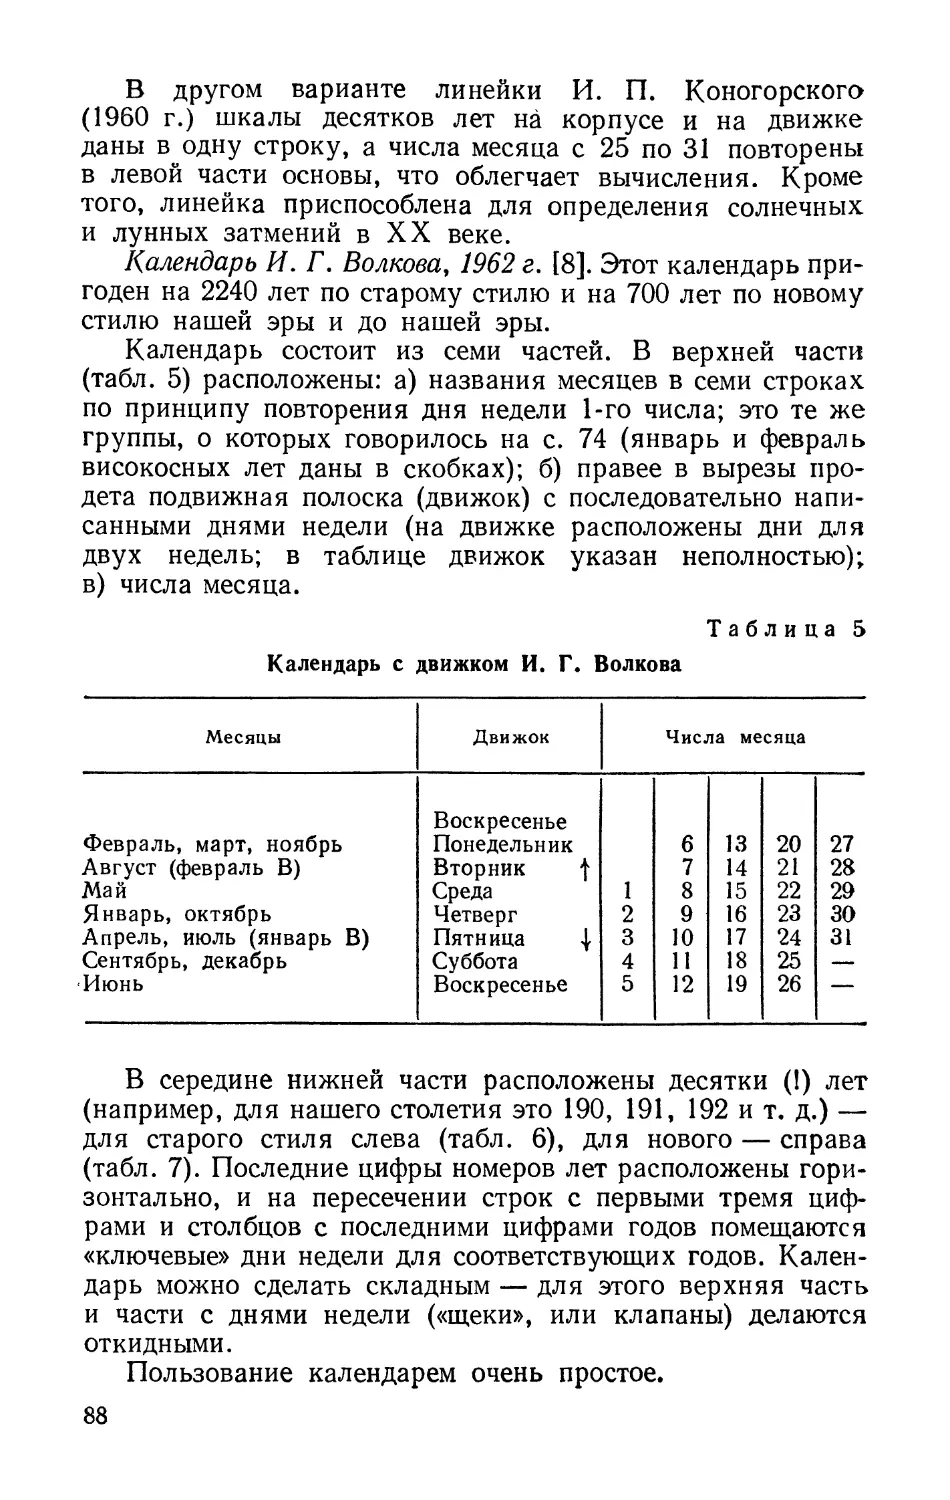 Календарь И. Г. Волкова, 1962 г.